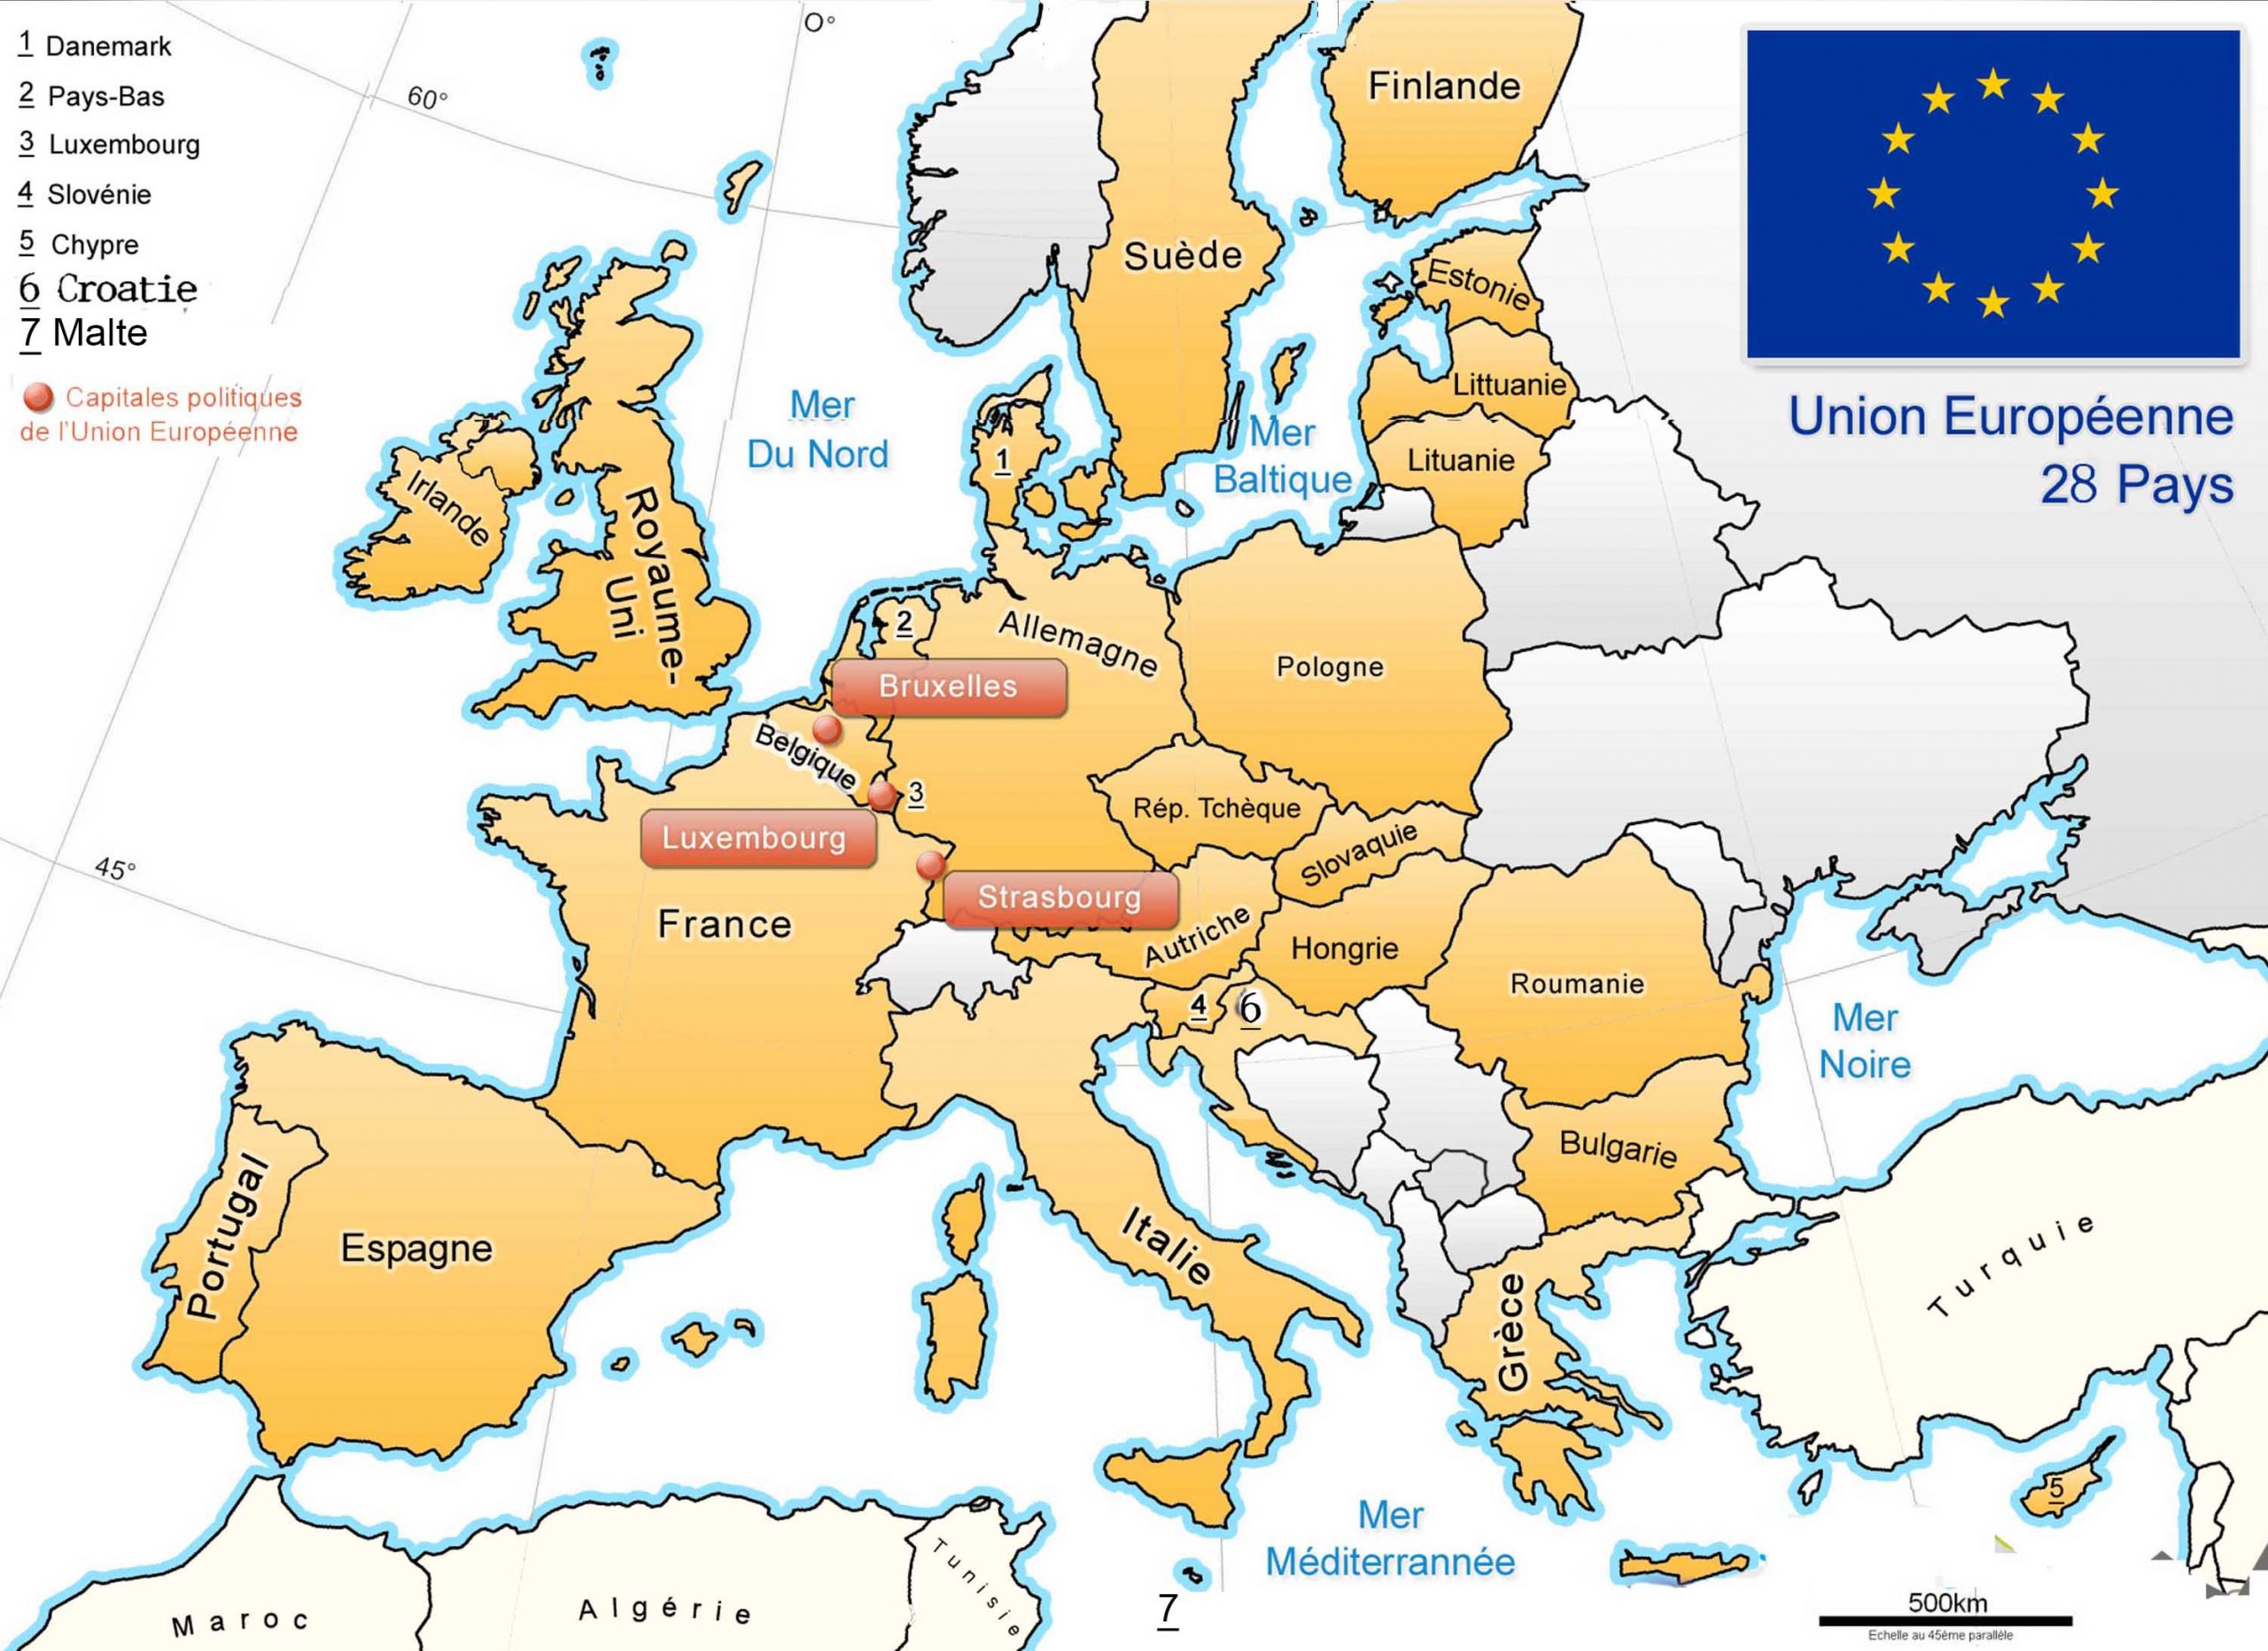 Apprendre À Placer Les Pays De L&amp;#039; Union Européenne - Le Blog tout Pays D Europe Jeux Gratuit 